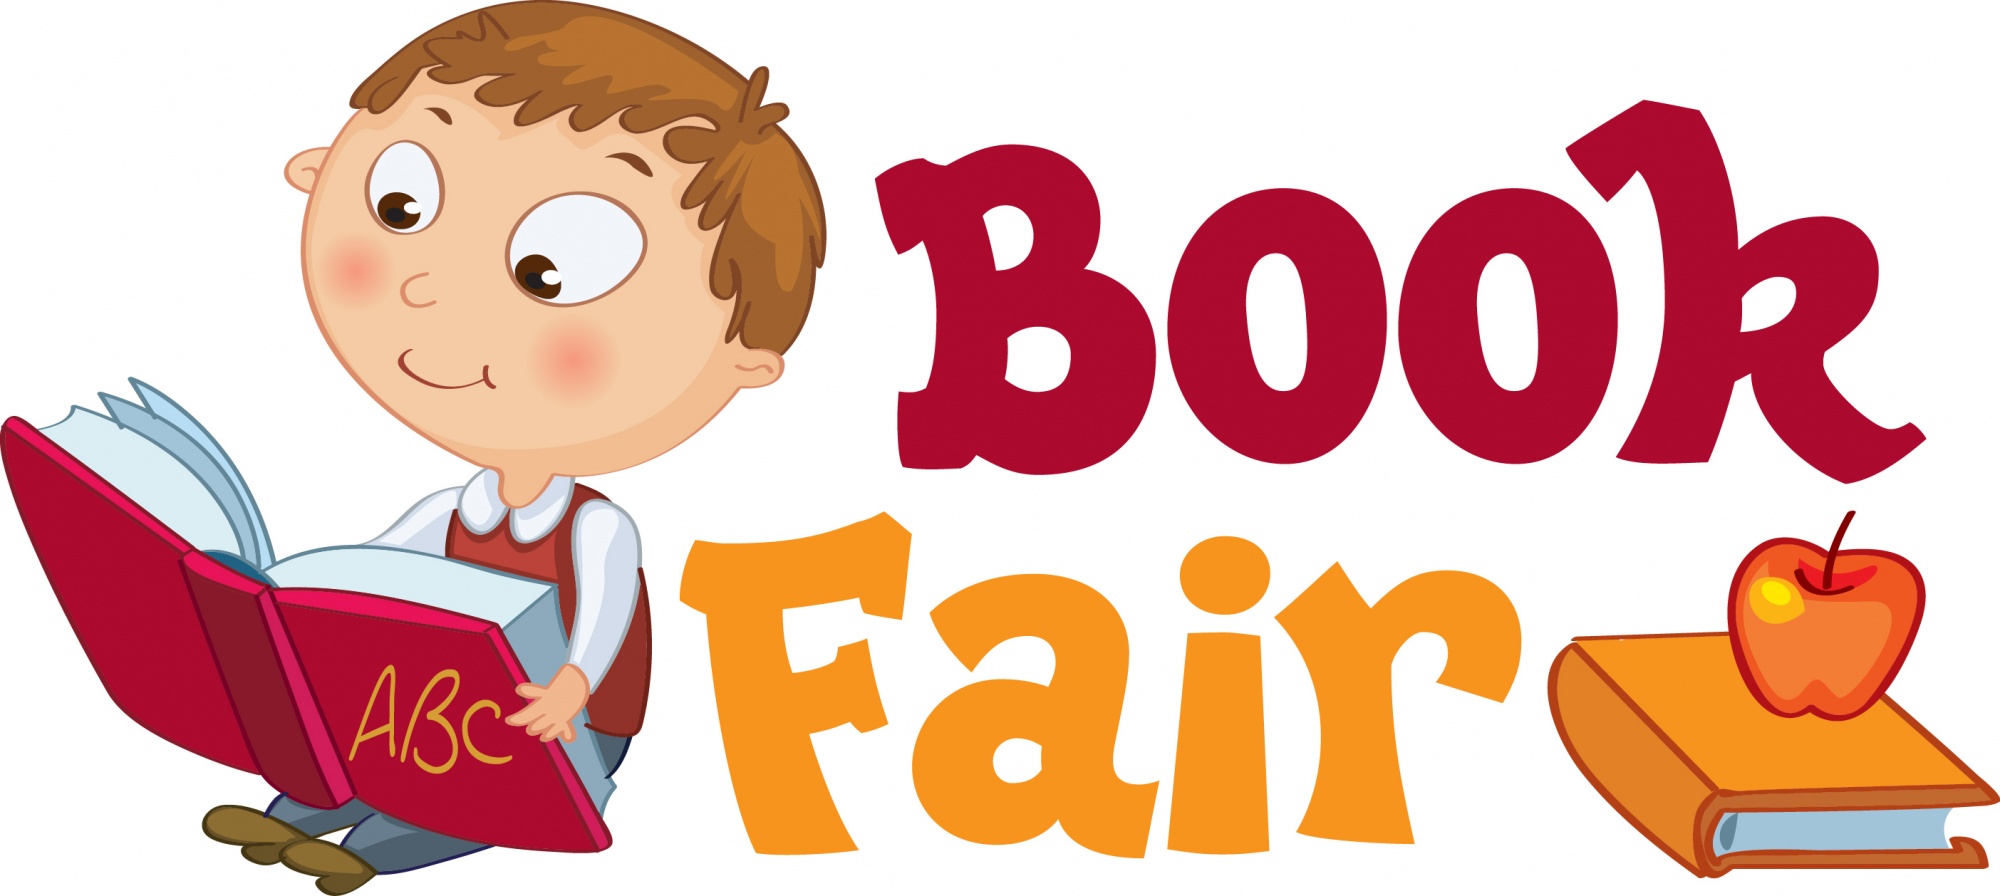 Book Fair Arrow